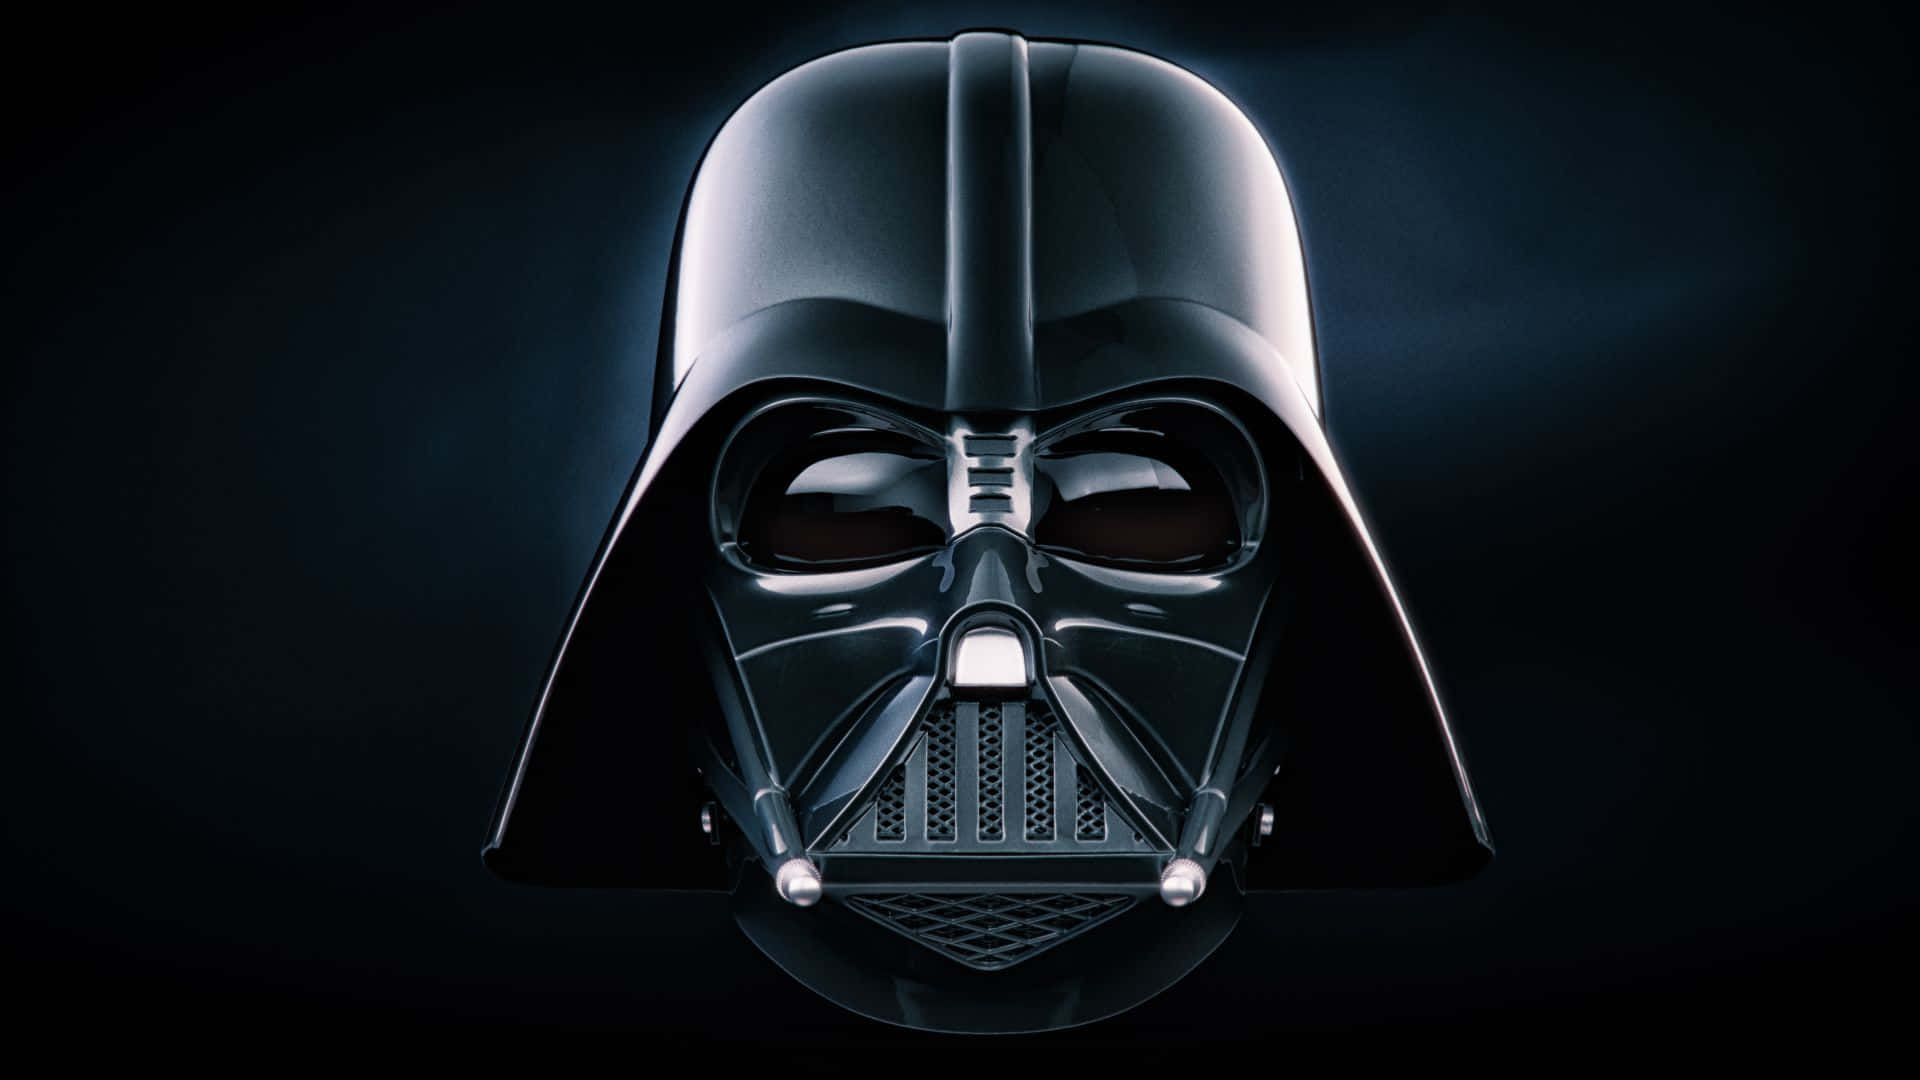 The Charisma of Darth Vader